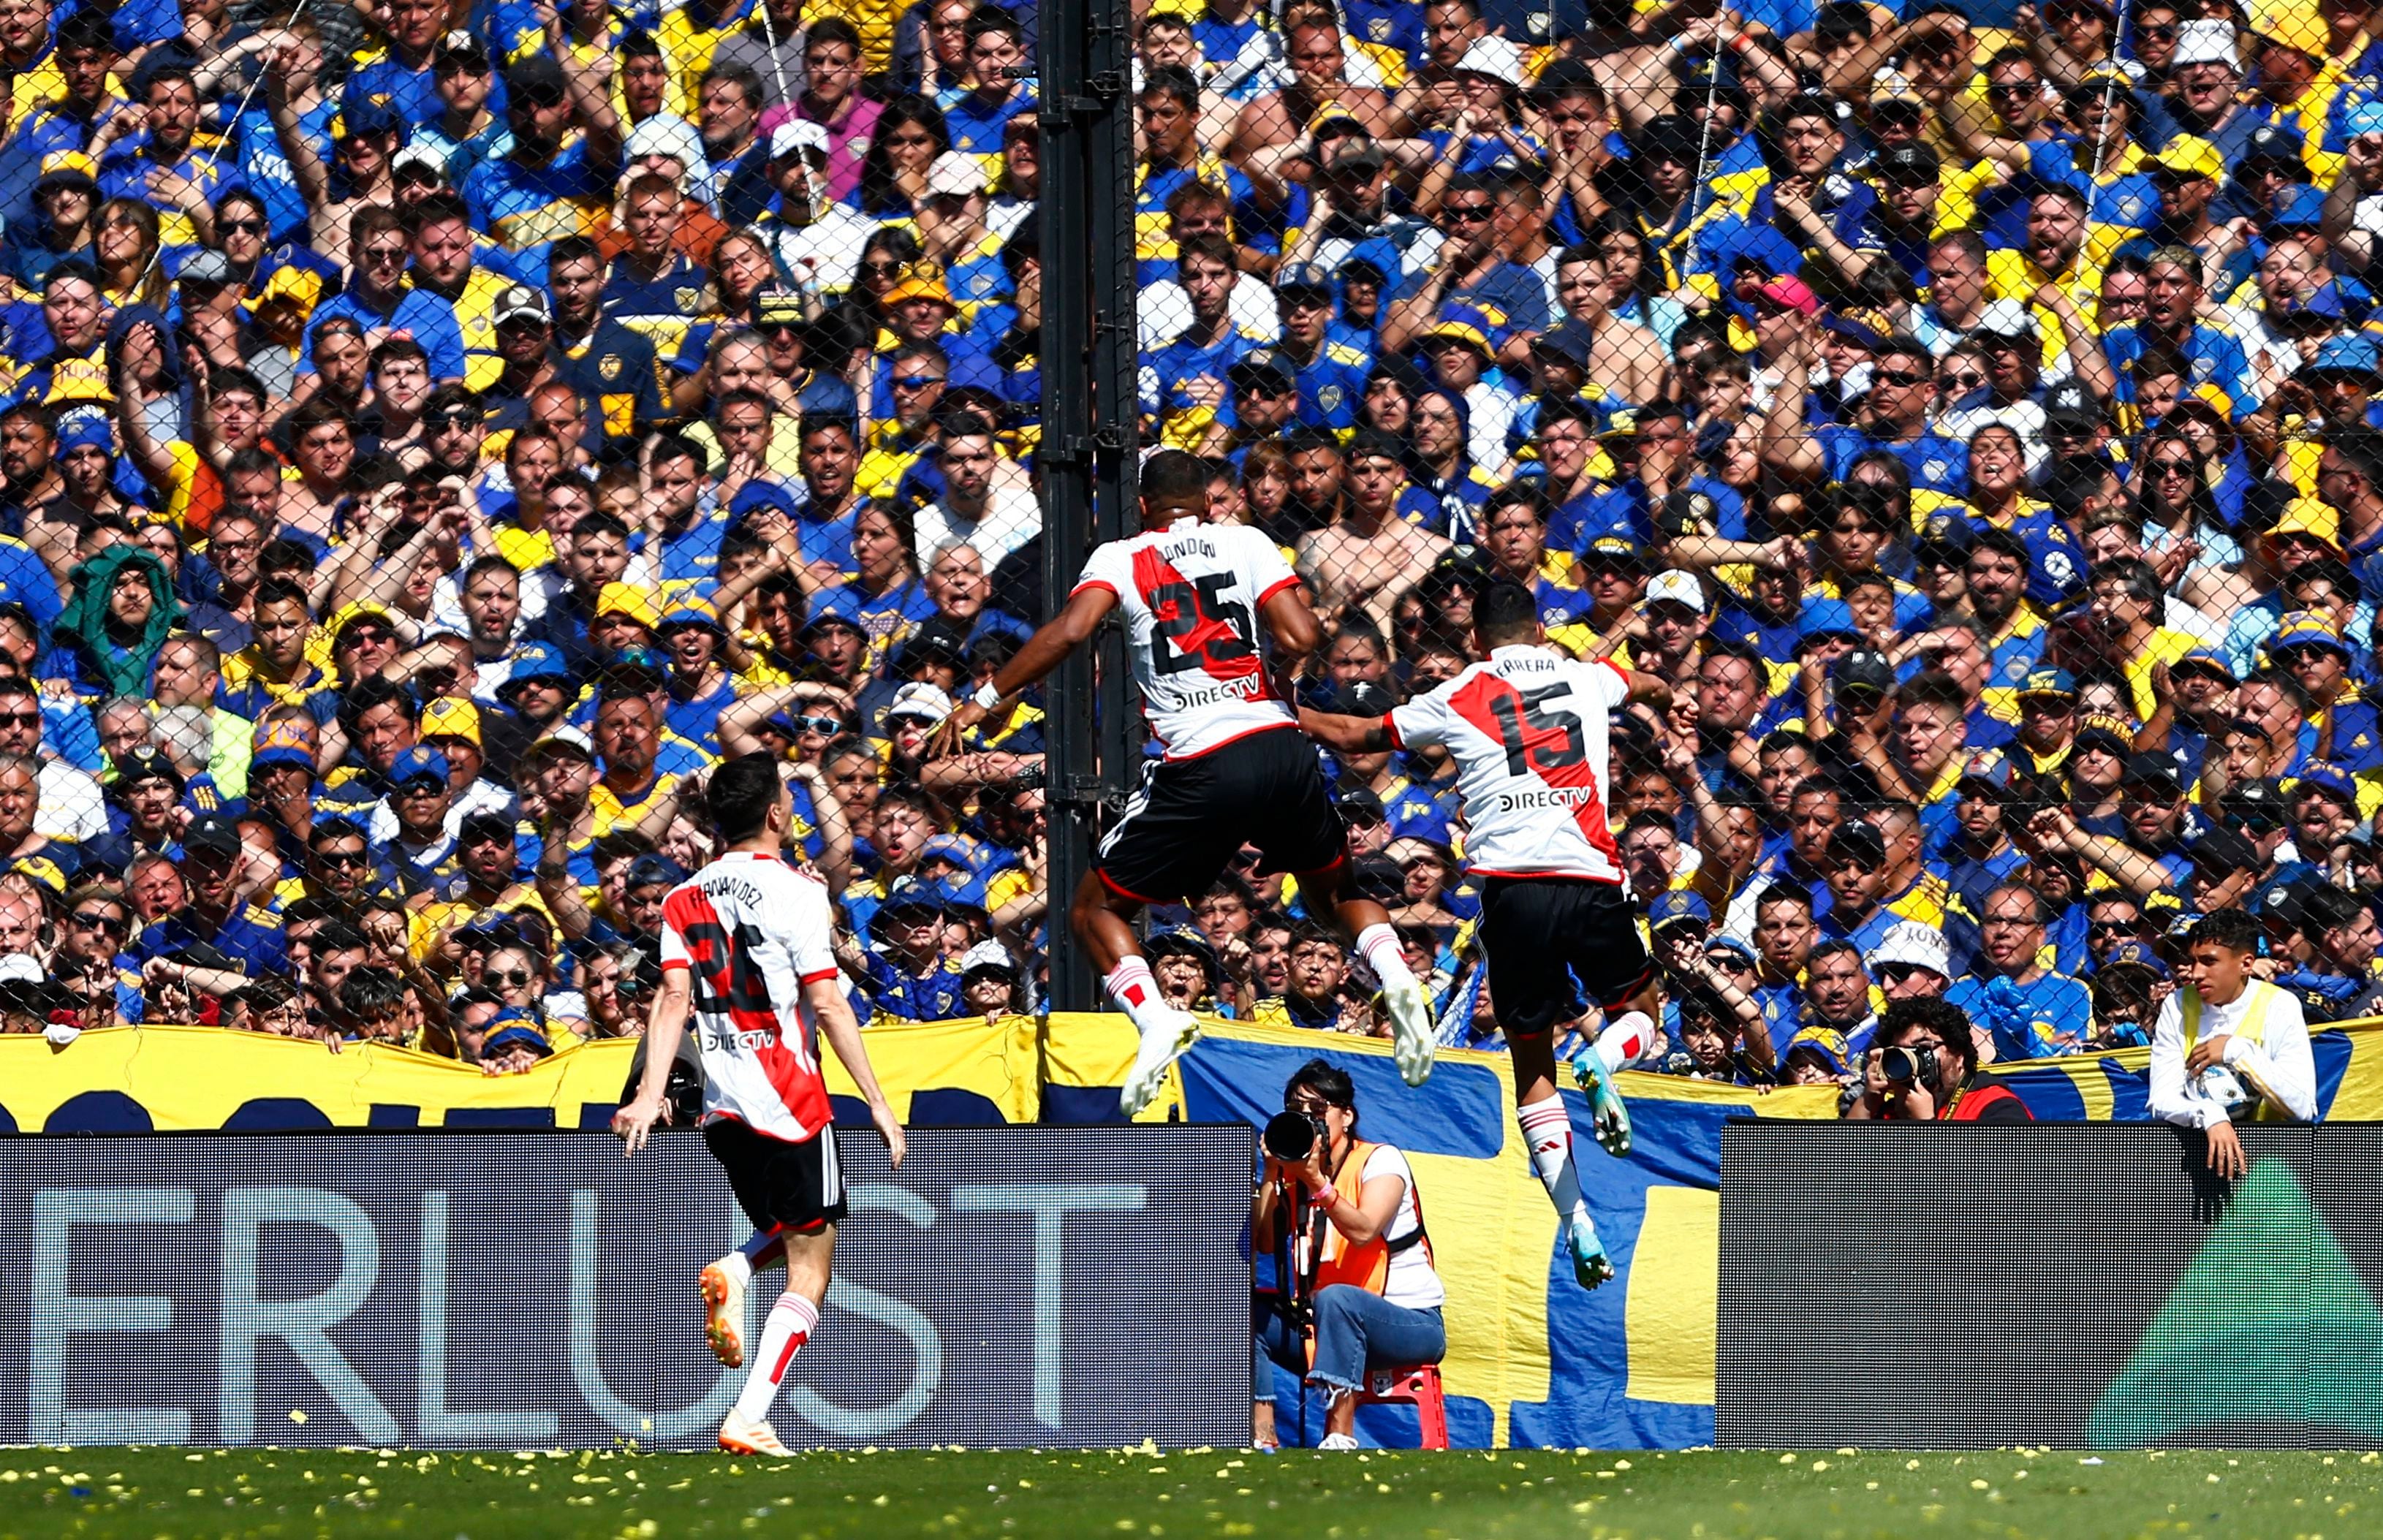 Los jugadores de River Plate festejan el gol de Salomón Rondón a Boca Juniors en el Superclásico (REUTERS/Cristina Sille)